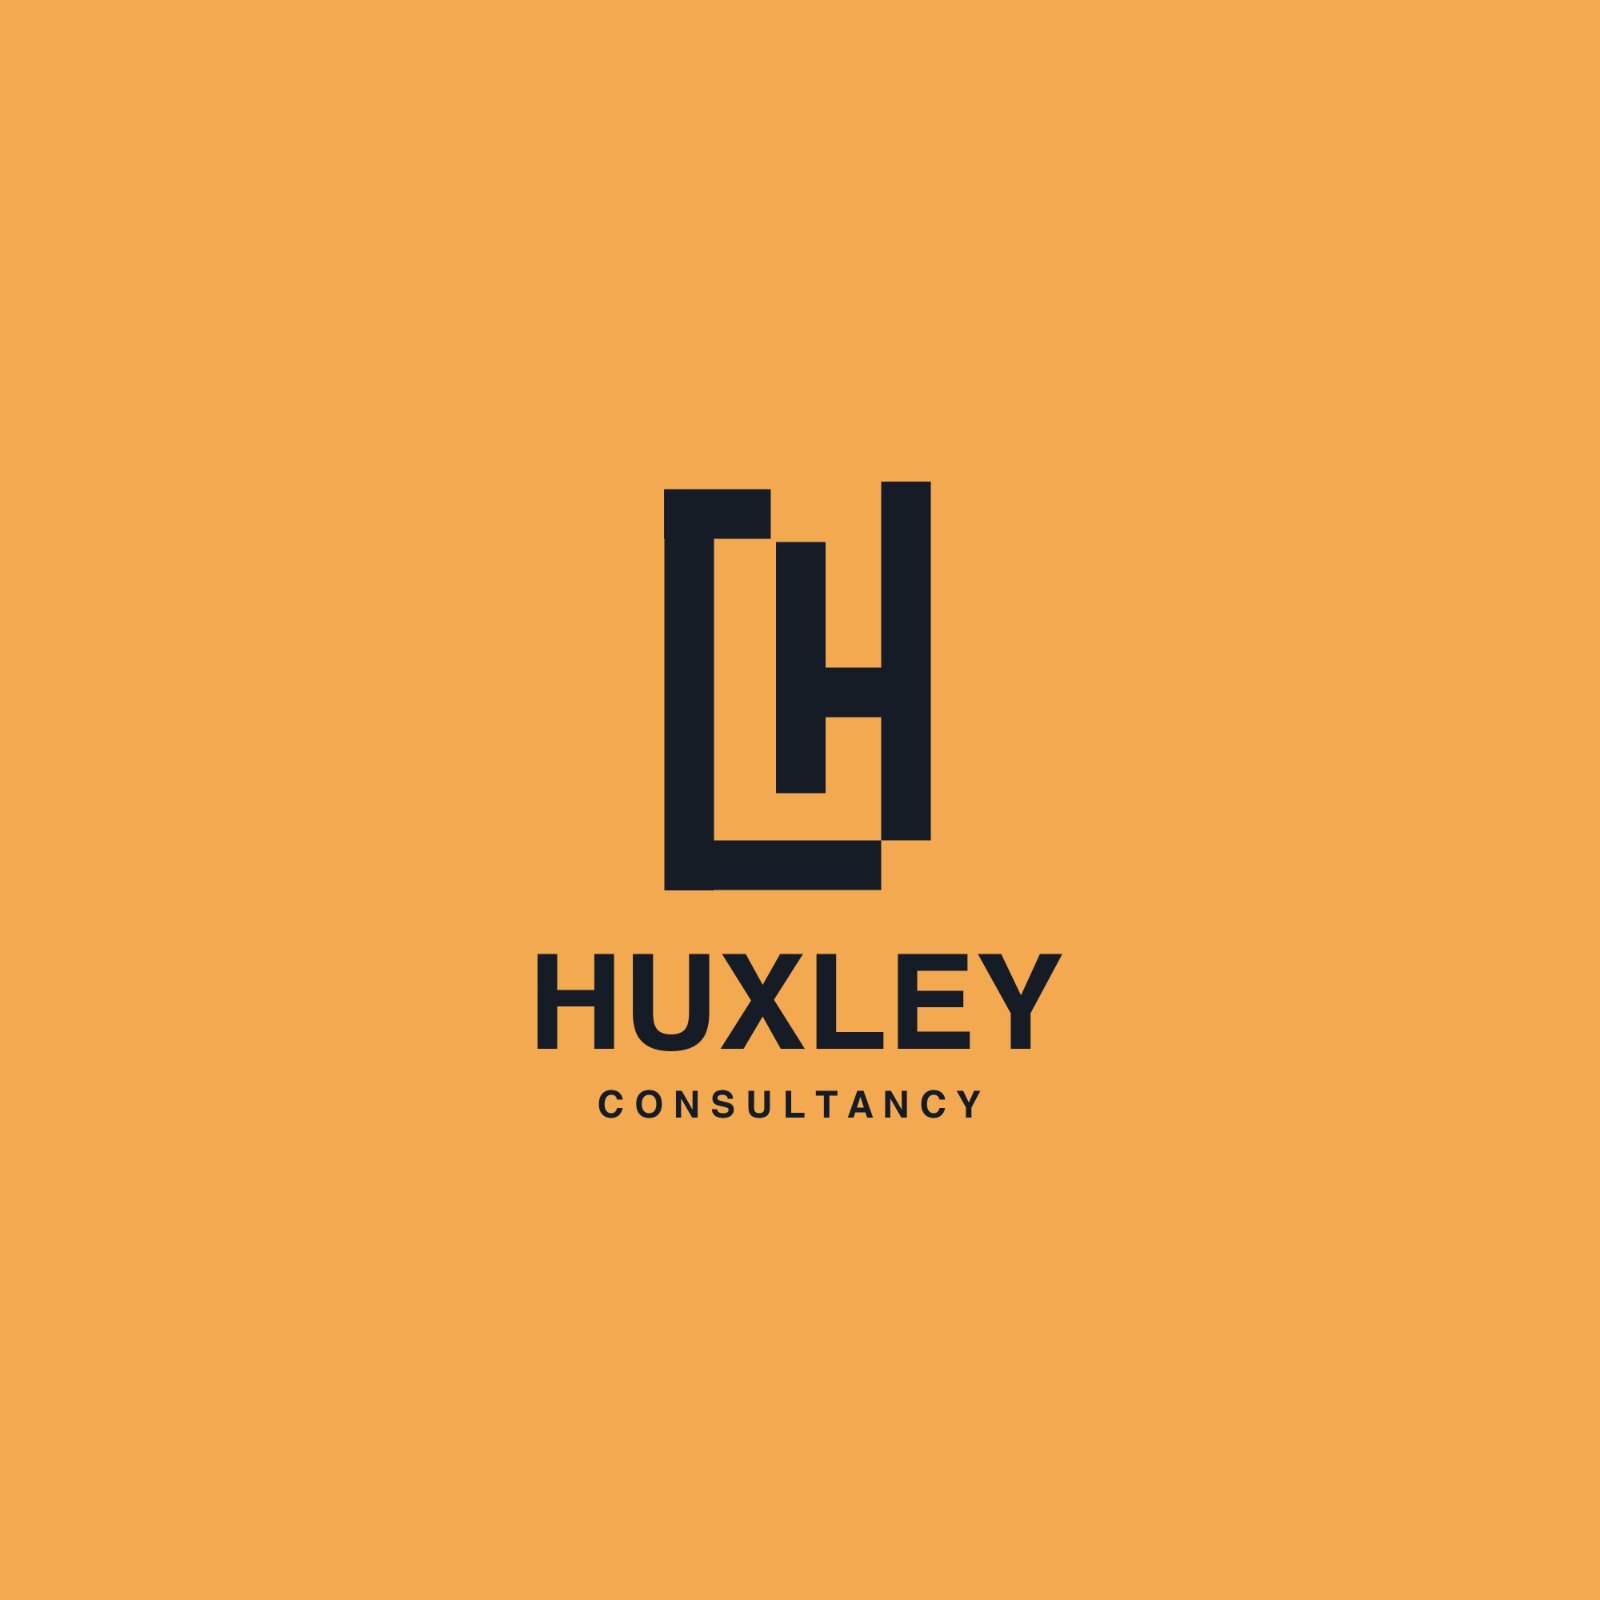 Huxley تستهدف 500 مليون جنيه مبيعات للغير وتستعد لدخول مجال التطوير العقاري